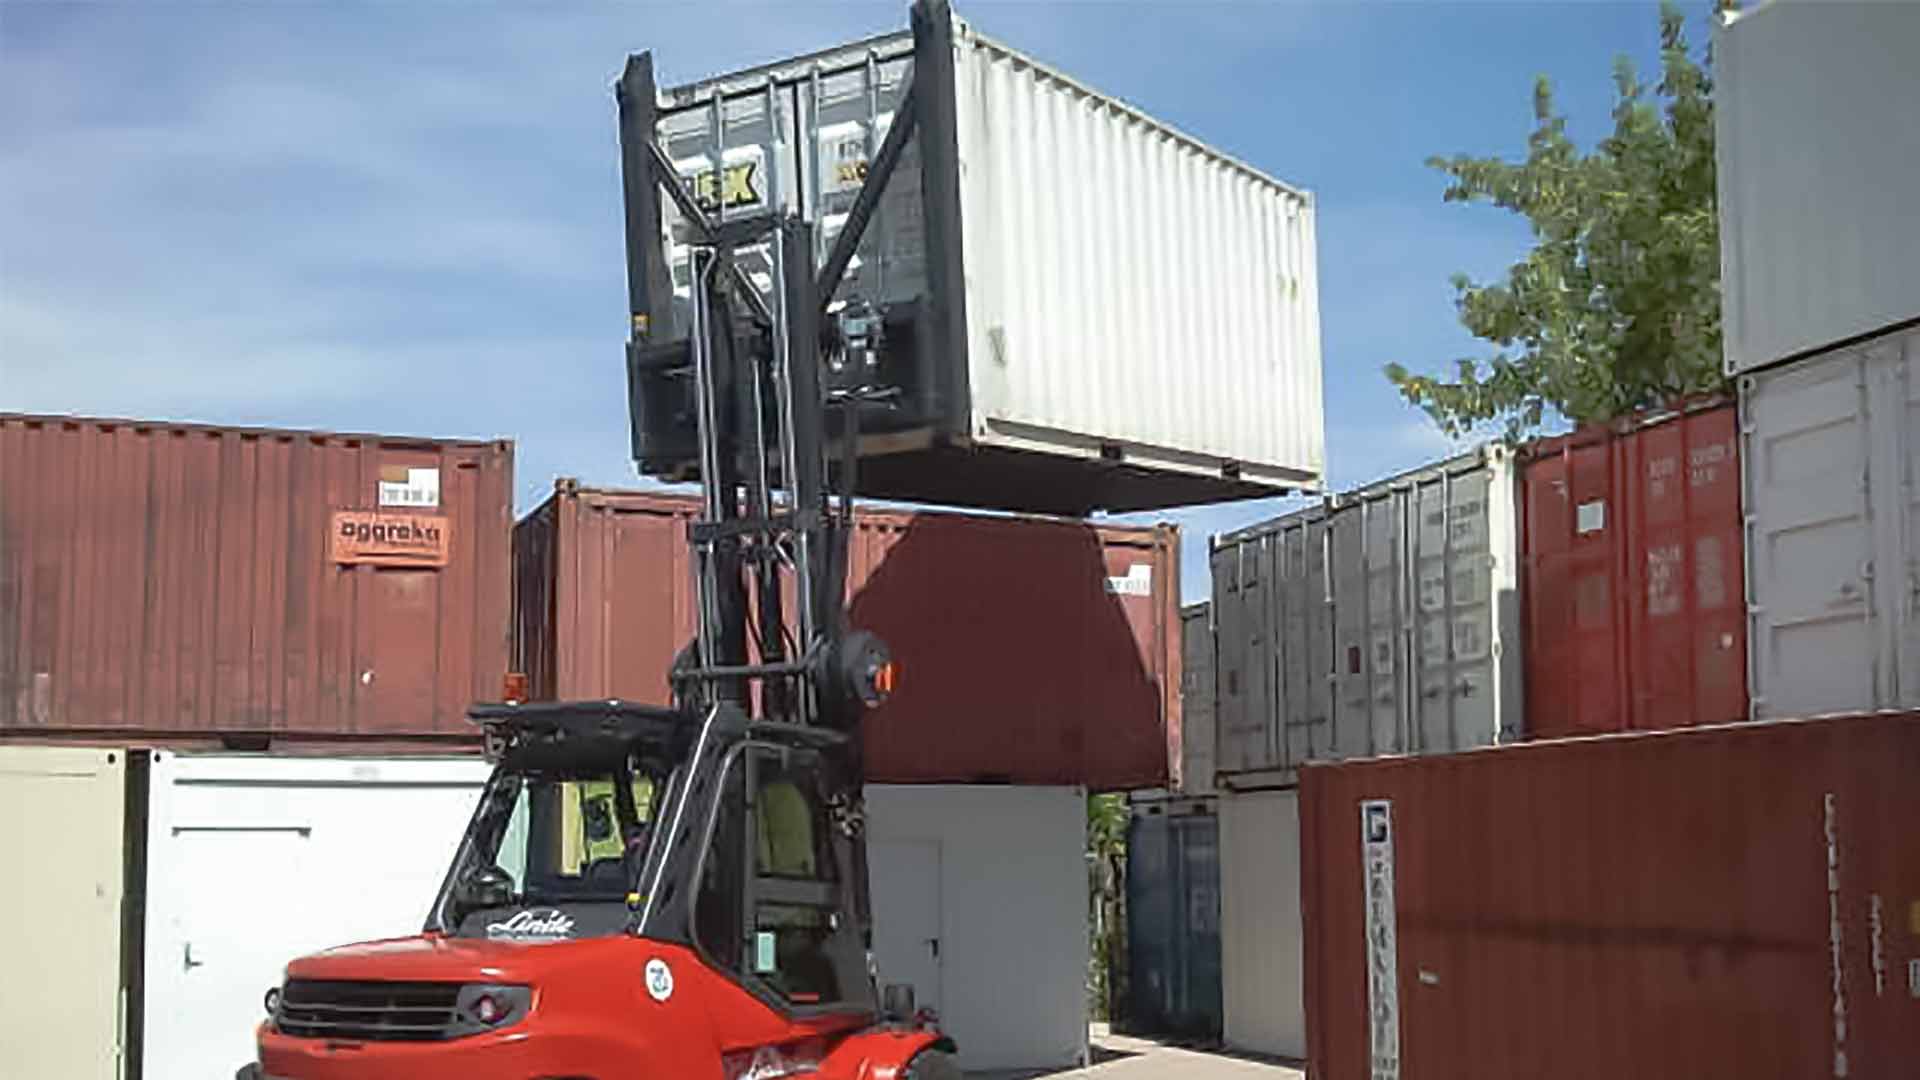 Ein roter Gabelstapler hebt einen Container an, um ihn auf einen Stapel weiterer Container zu setzen